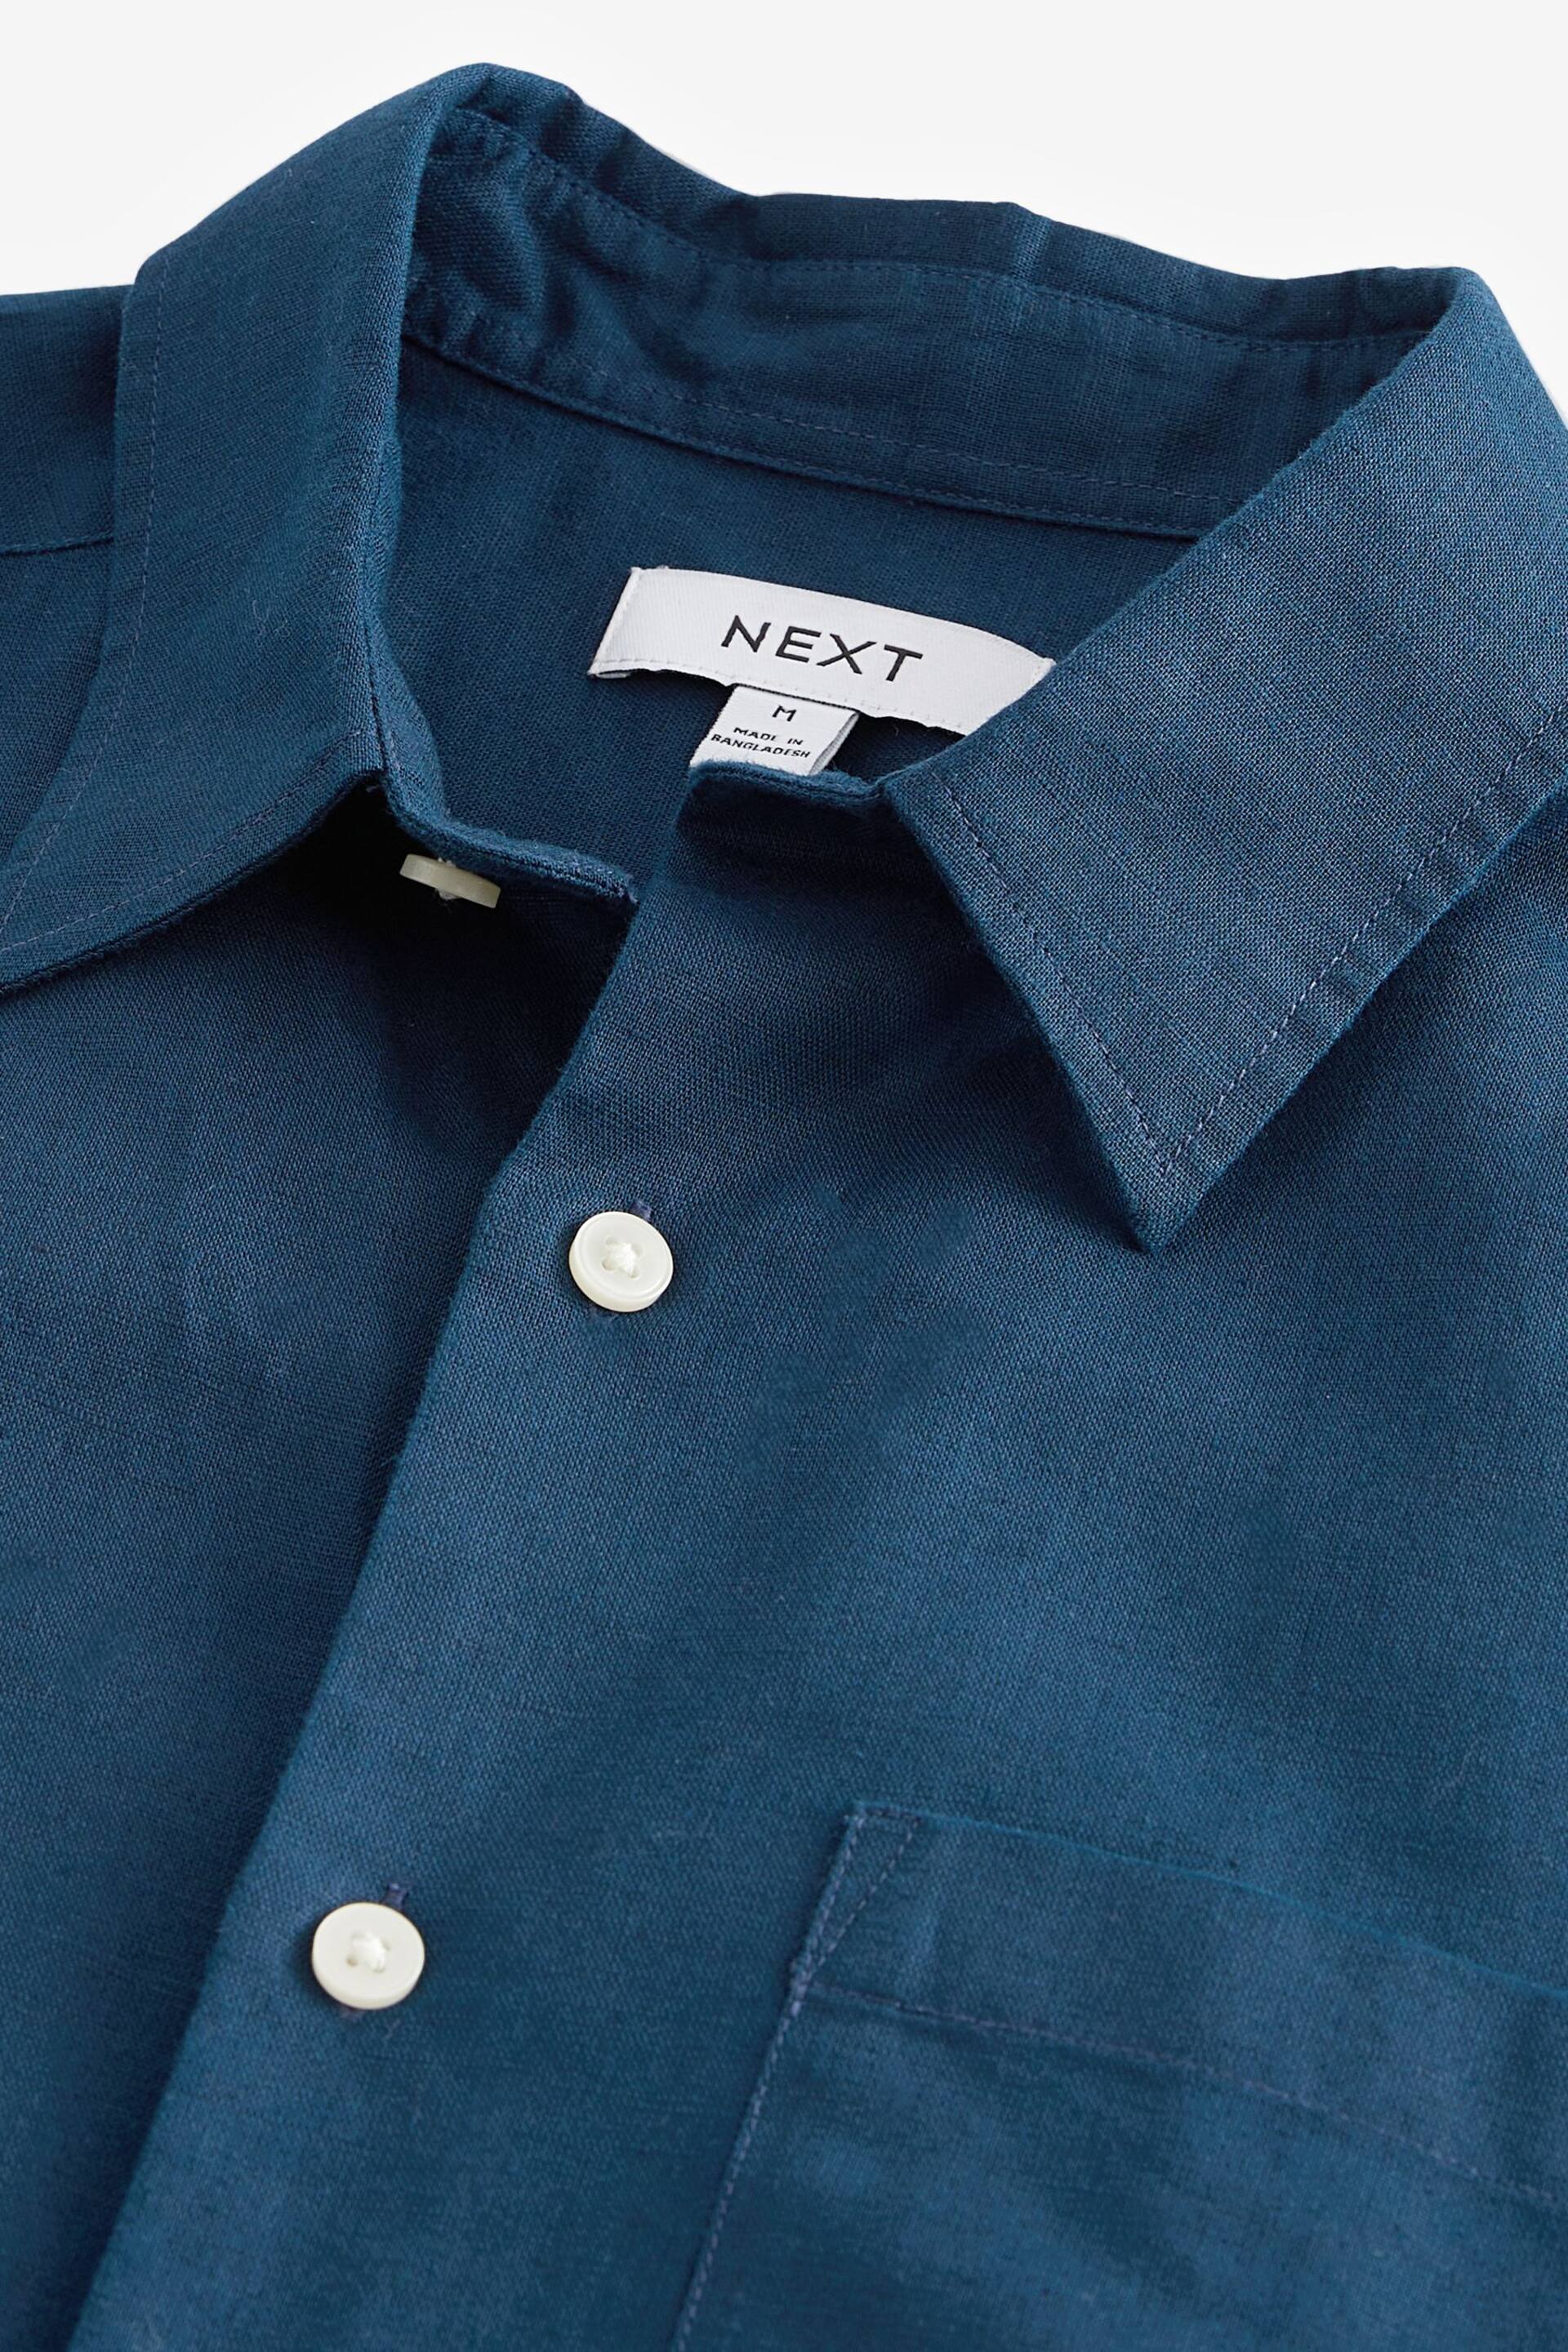 Navy Standard Collar Linen Blend Short Sleeve Shirt - Image 6 of 7